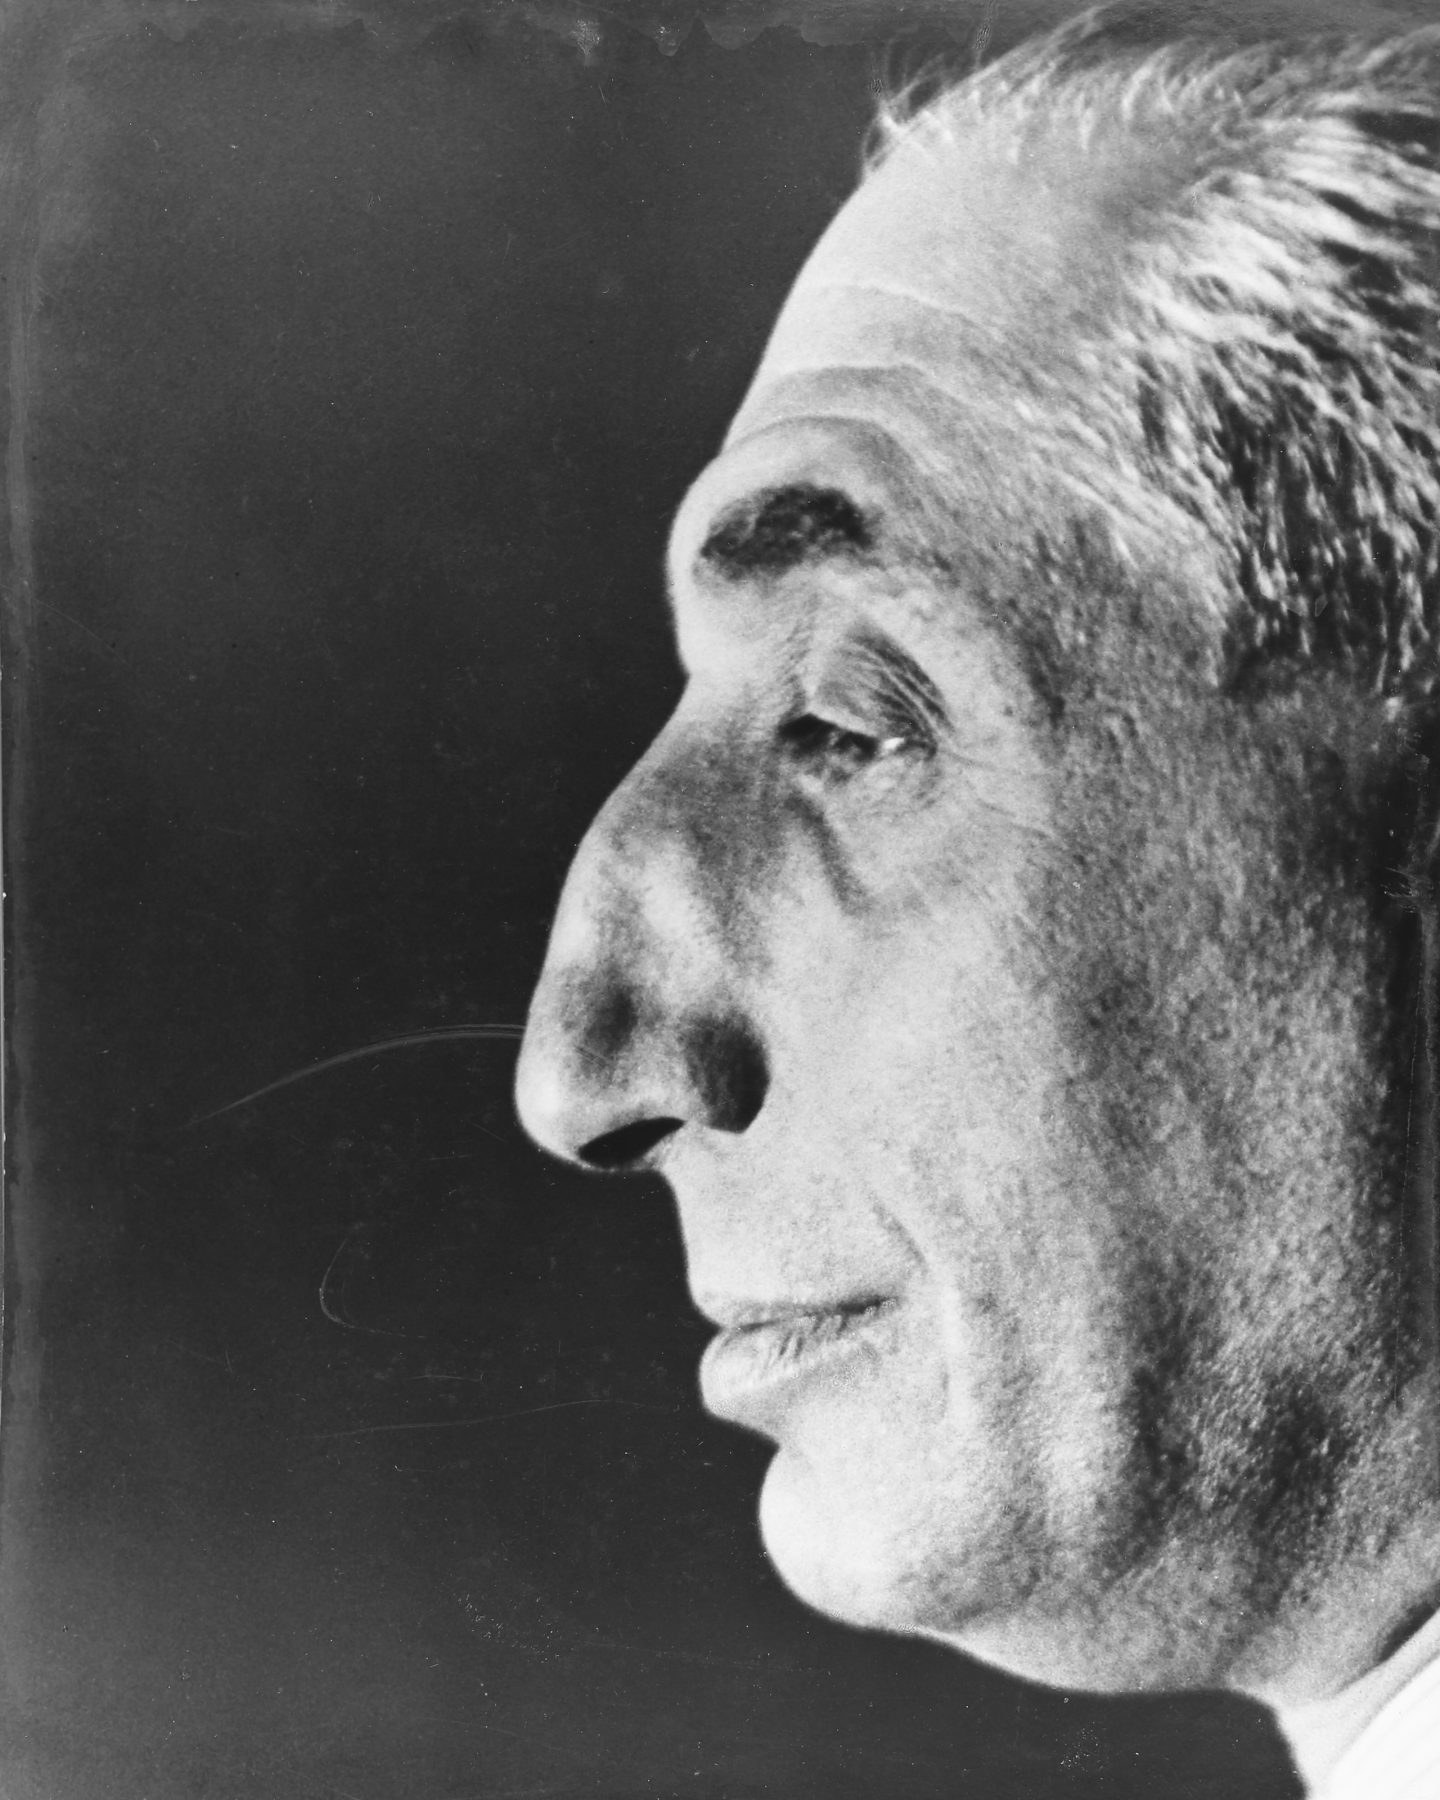 Auf dem Porträt ist Alfred Flechtheims markantes Gesicht im Profil zu sehen. Die Details seiner Physiognomie stechen im Kontrast zu dem dunklen Hintergrund stark hervor.